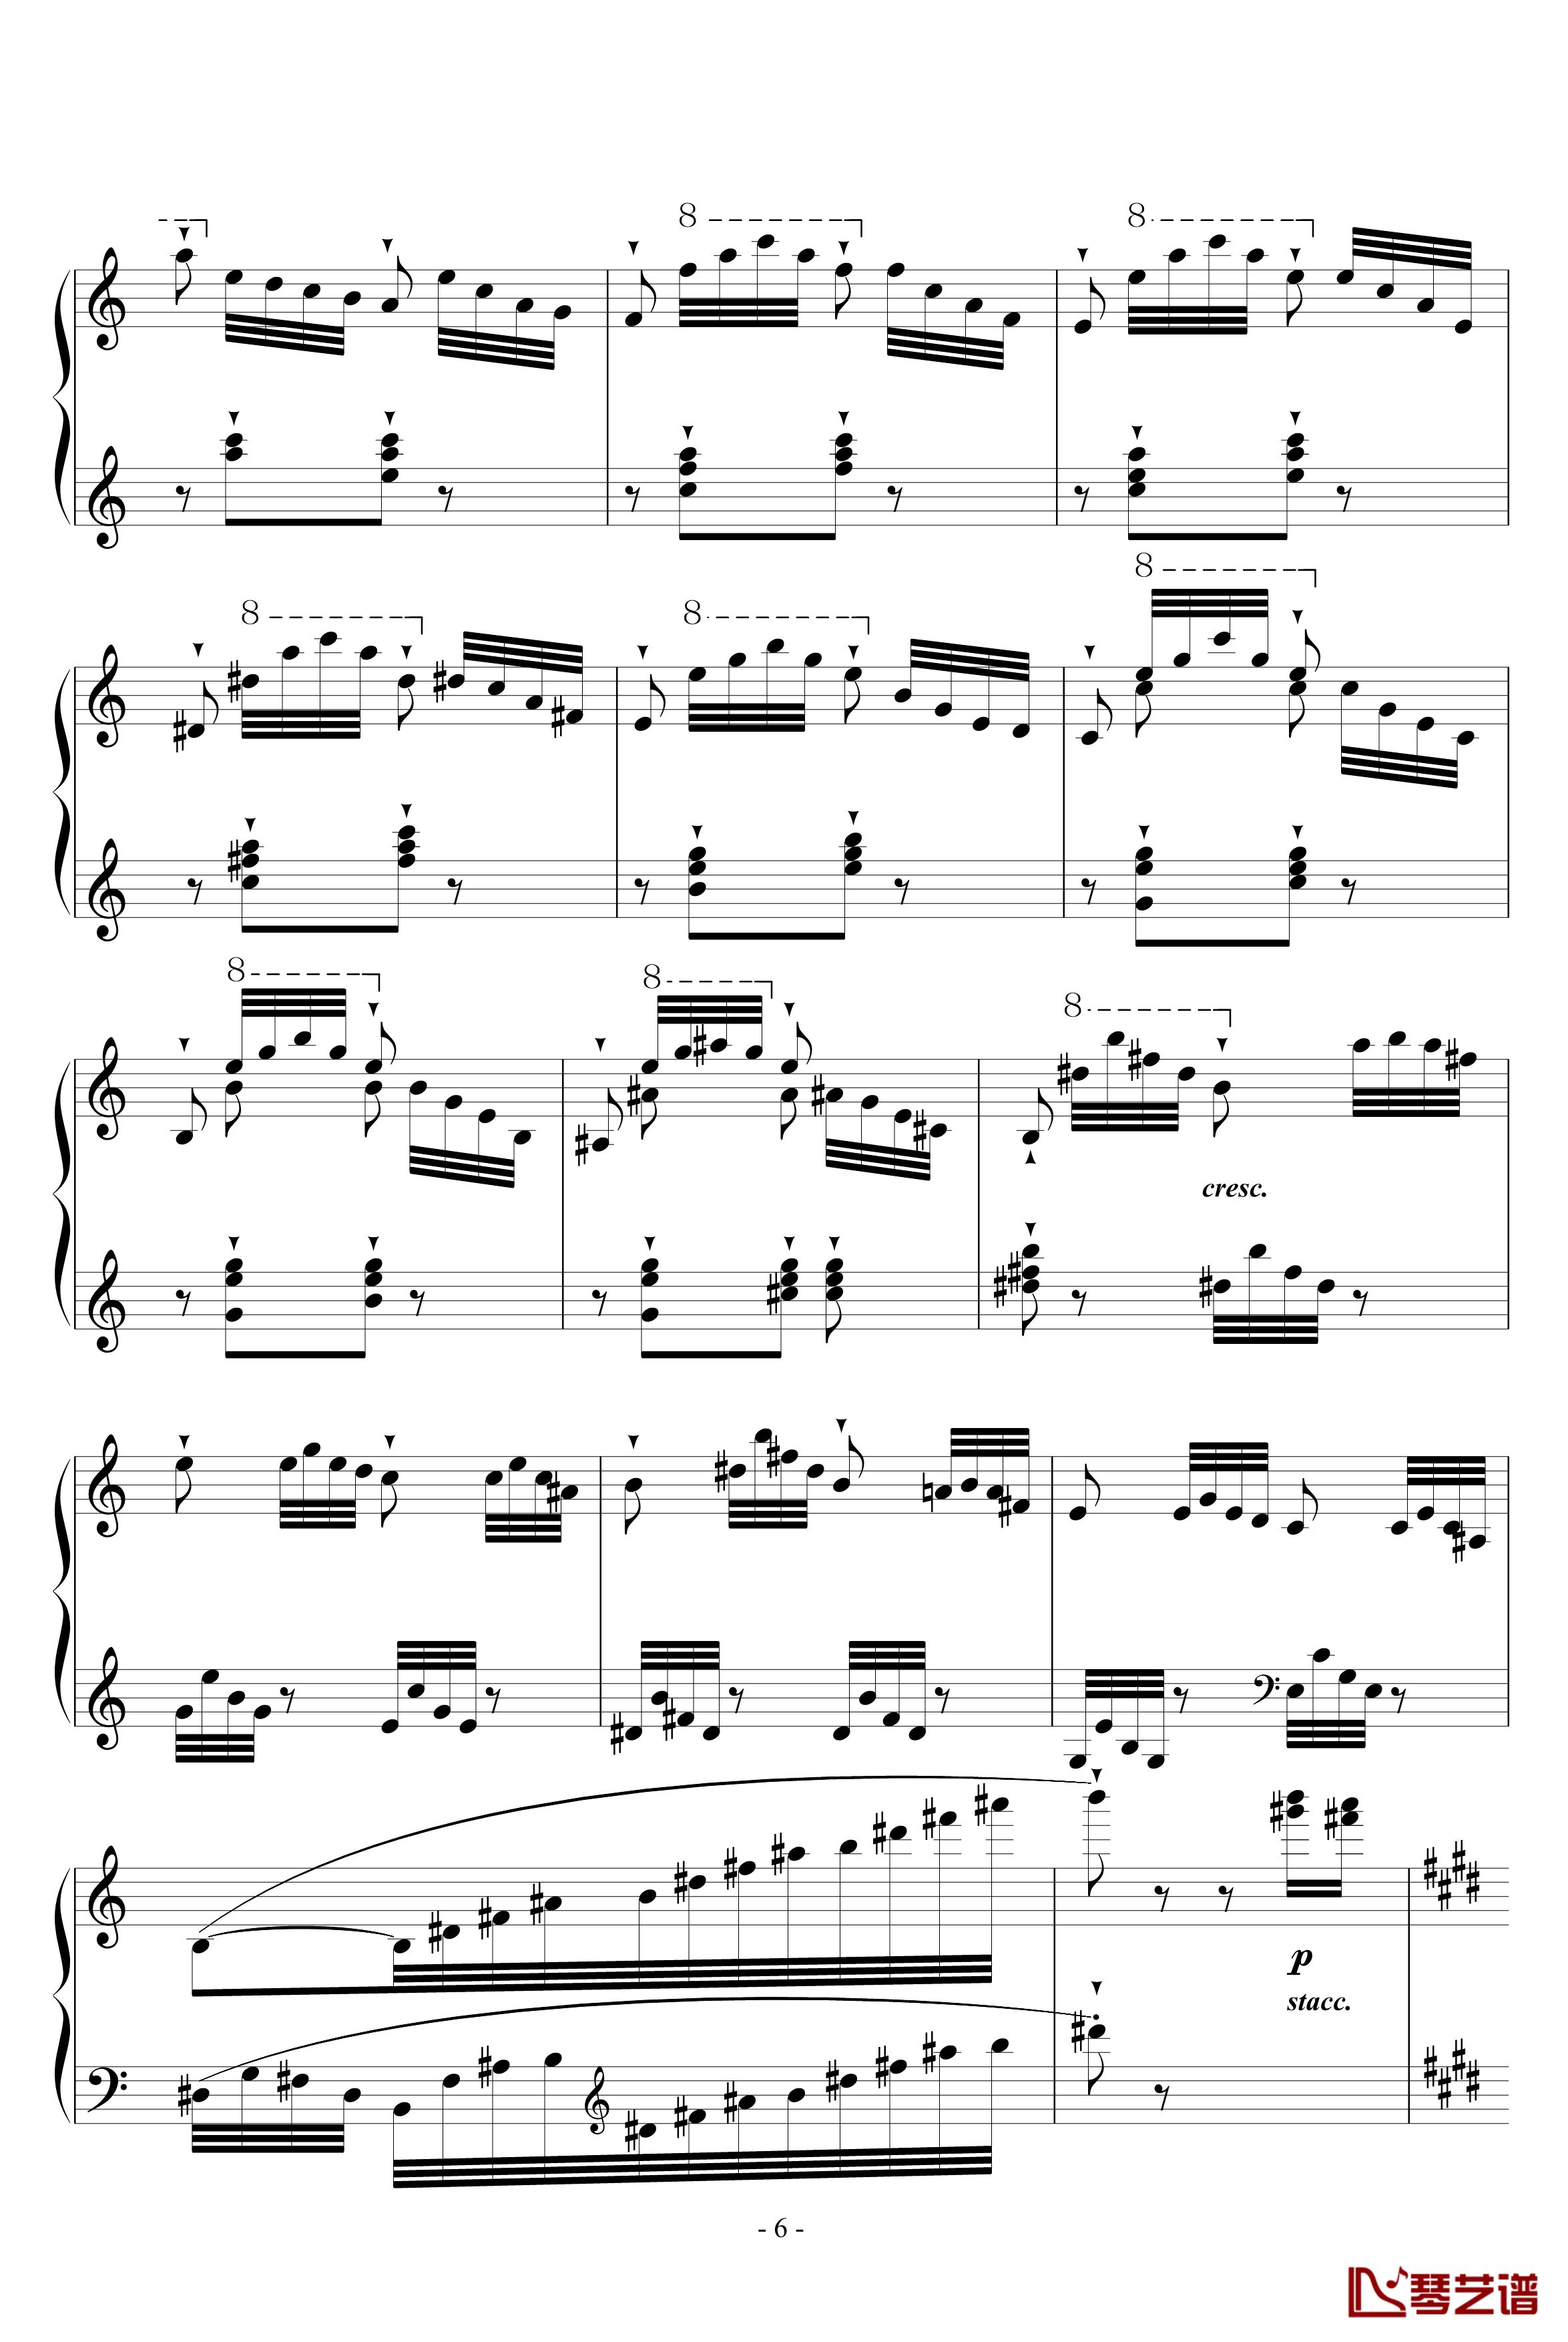 帕格尼尼练习曲5钢琴谱-李斯特6